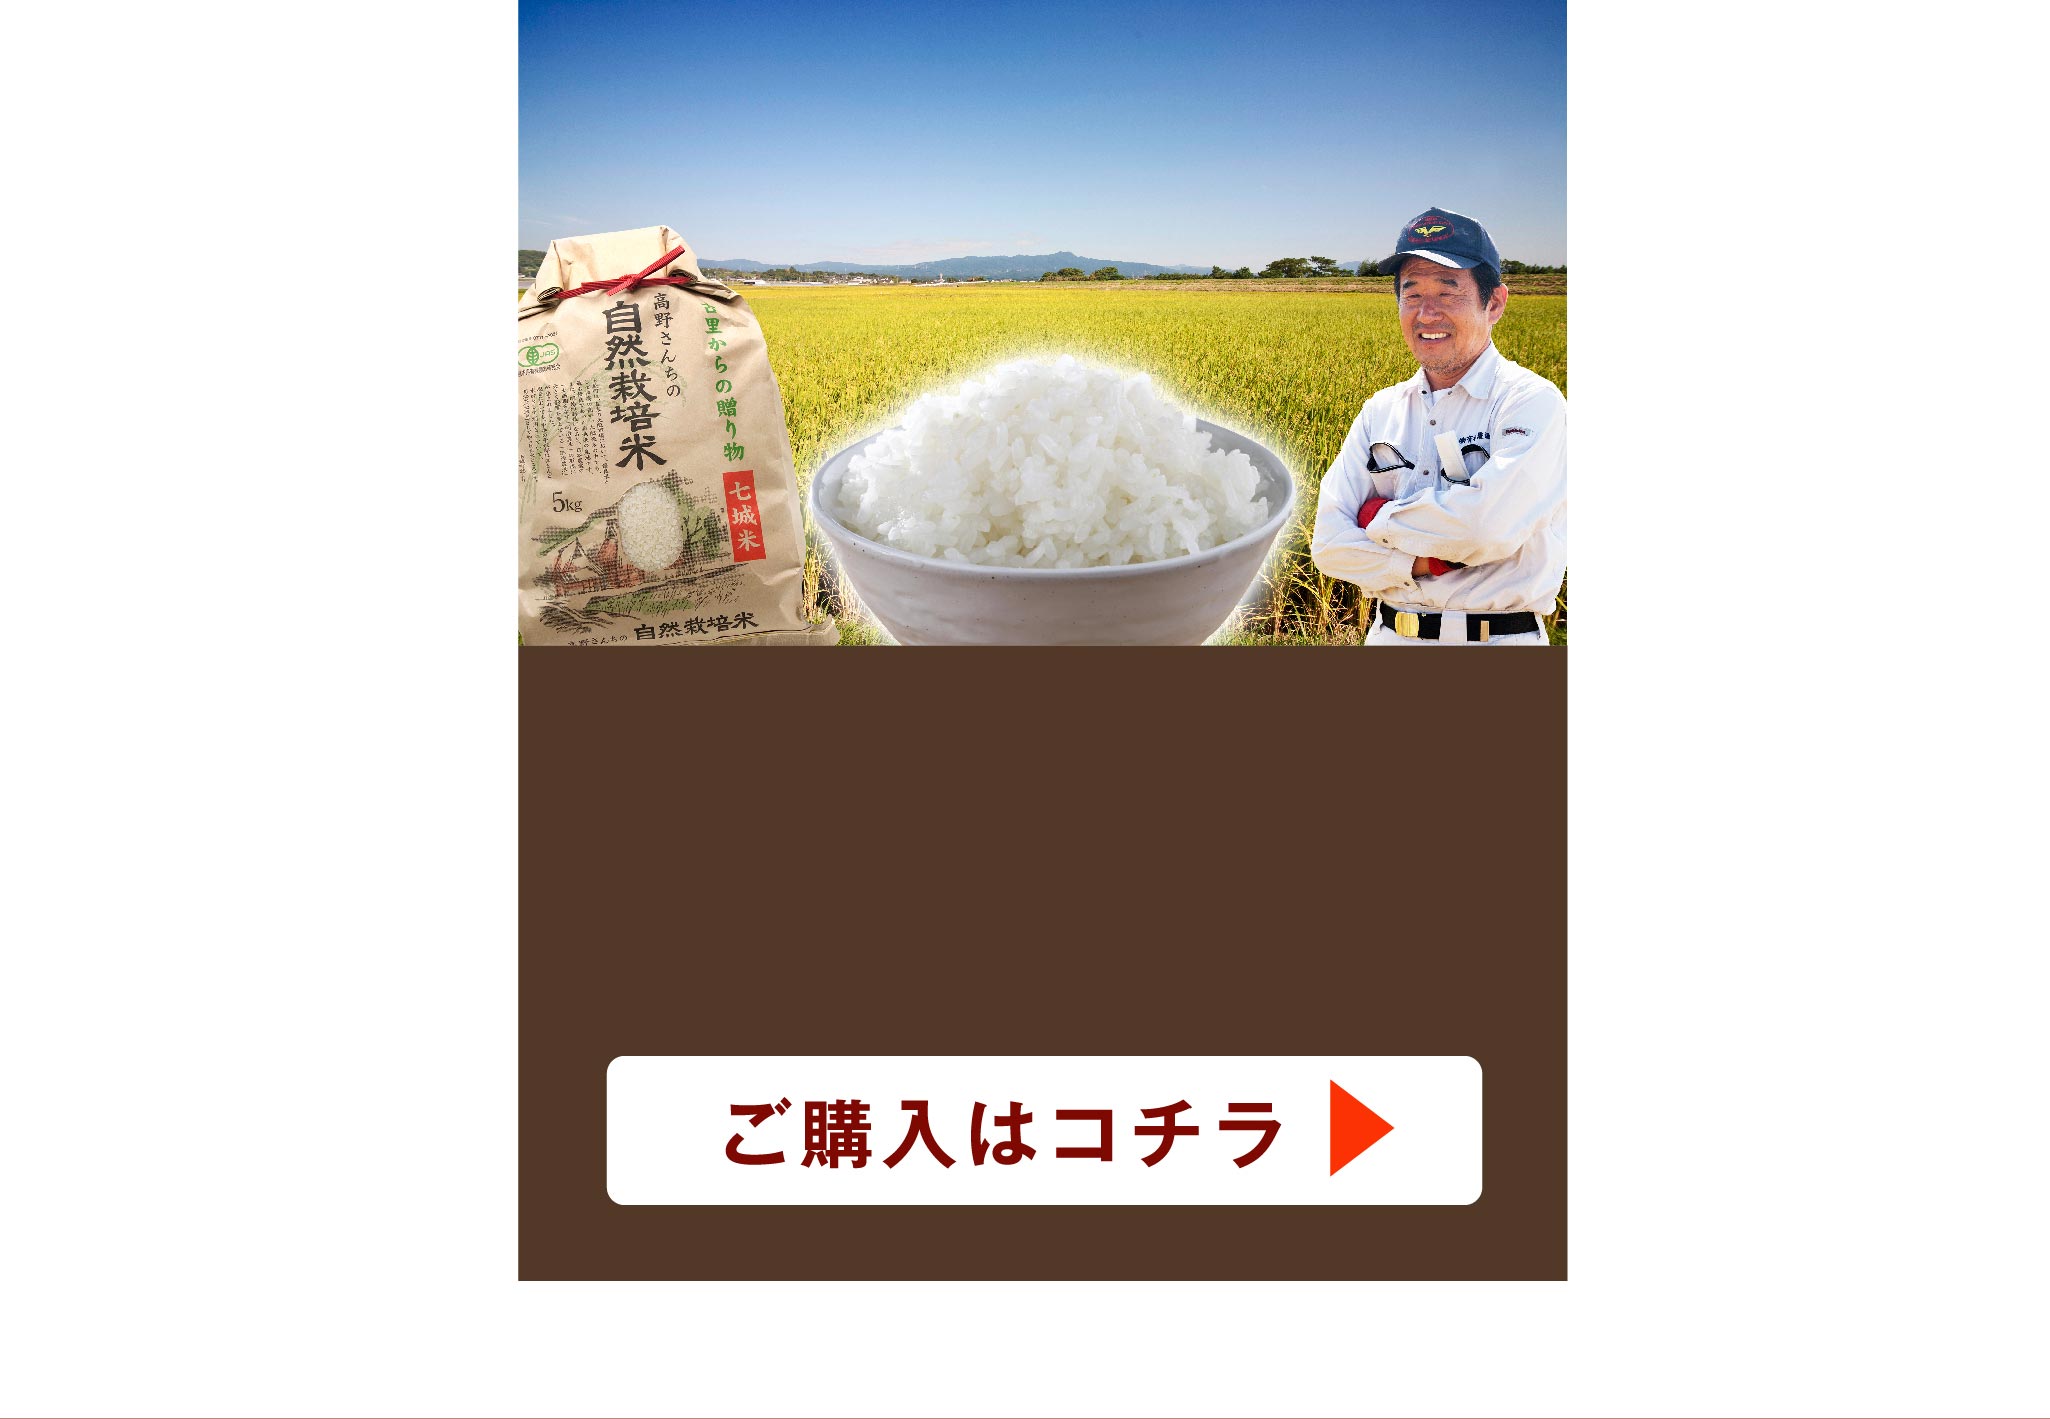 自然米‼️農家直送 自然栽培無農薬 5kg れんげ米 菊池米七城町栽培 - 米